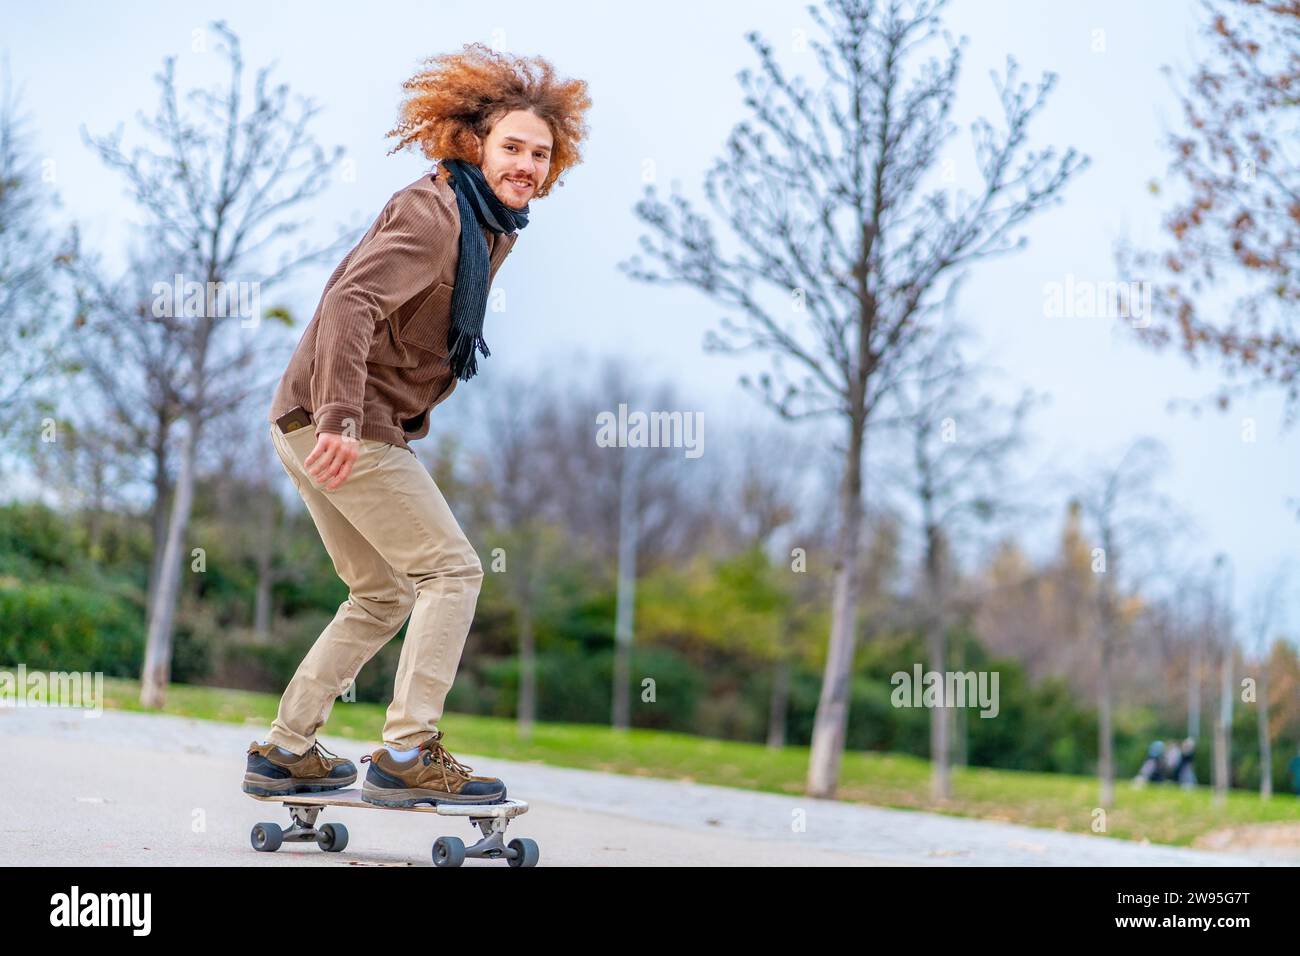 Skater mit lockigen rothaarigen Haaren auf einem Brett in einem Stadtpark Stockfoto